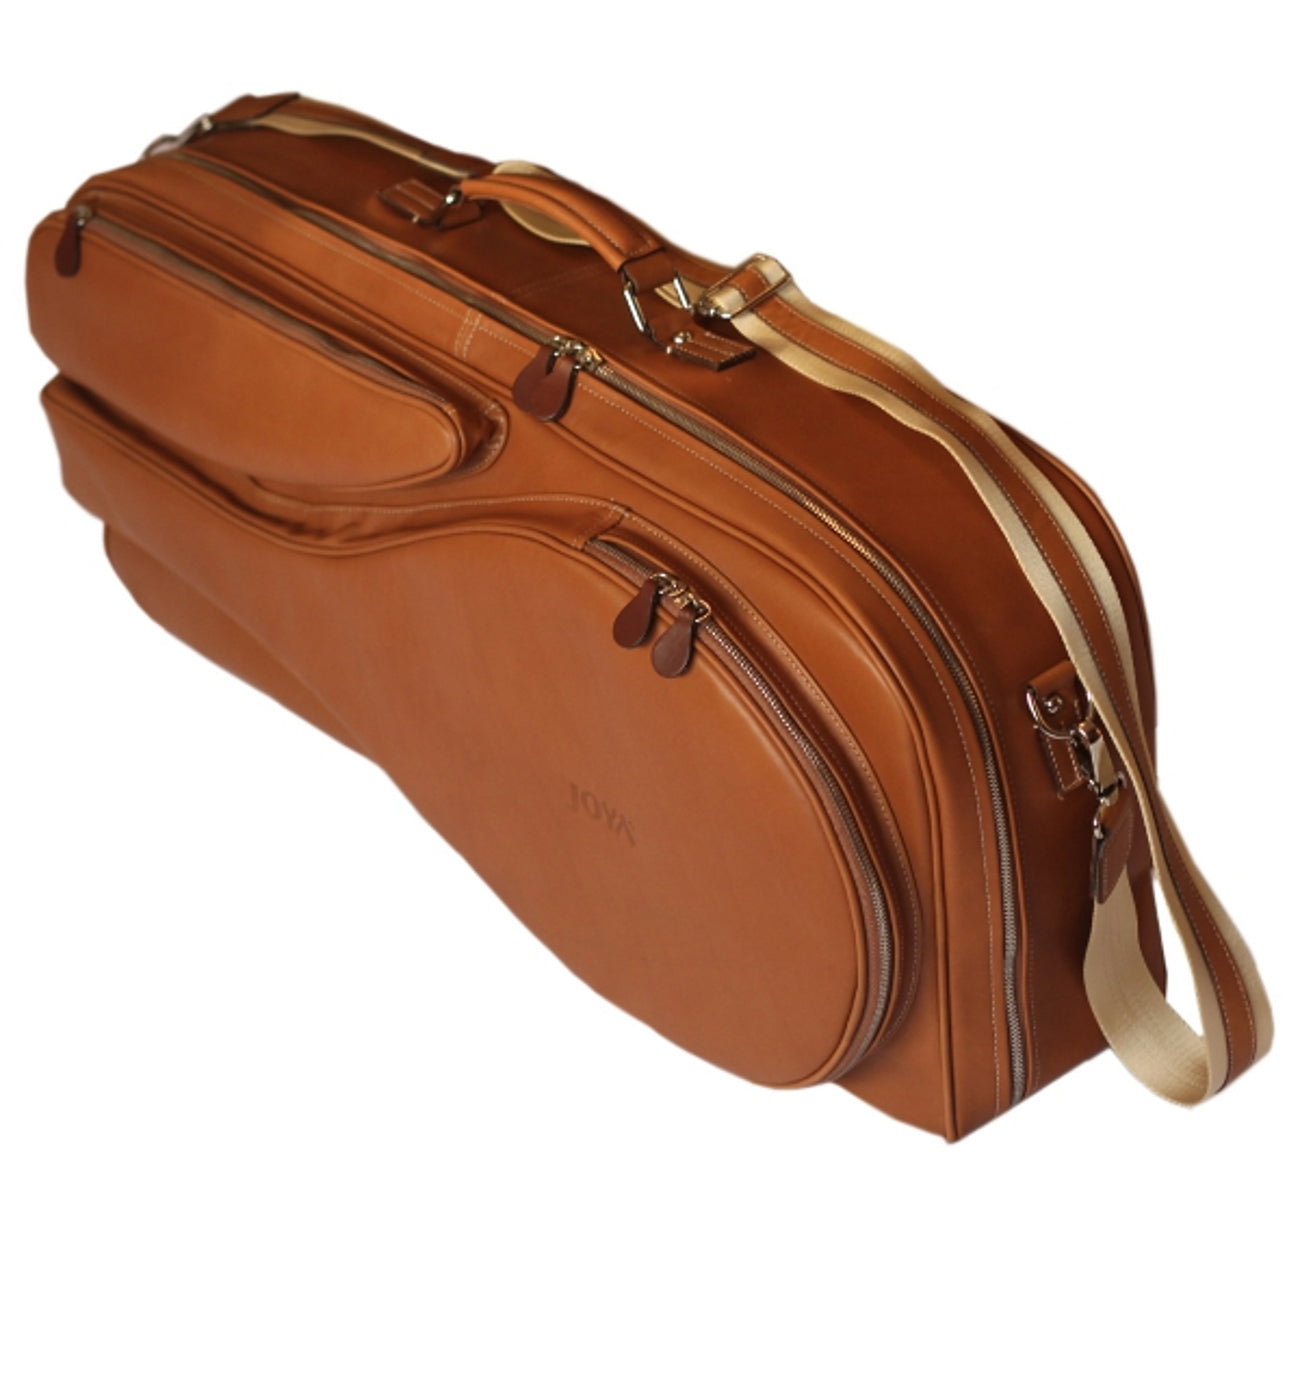 6 raketli deri taba renk tenis çantası